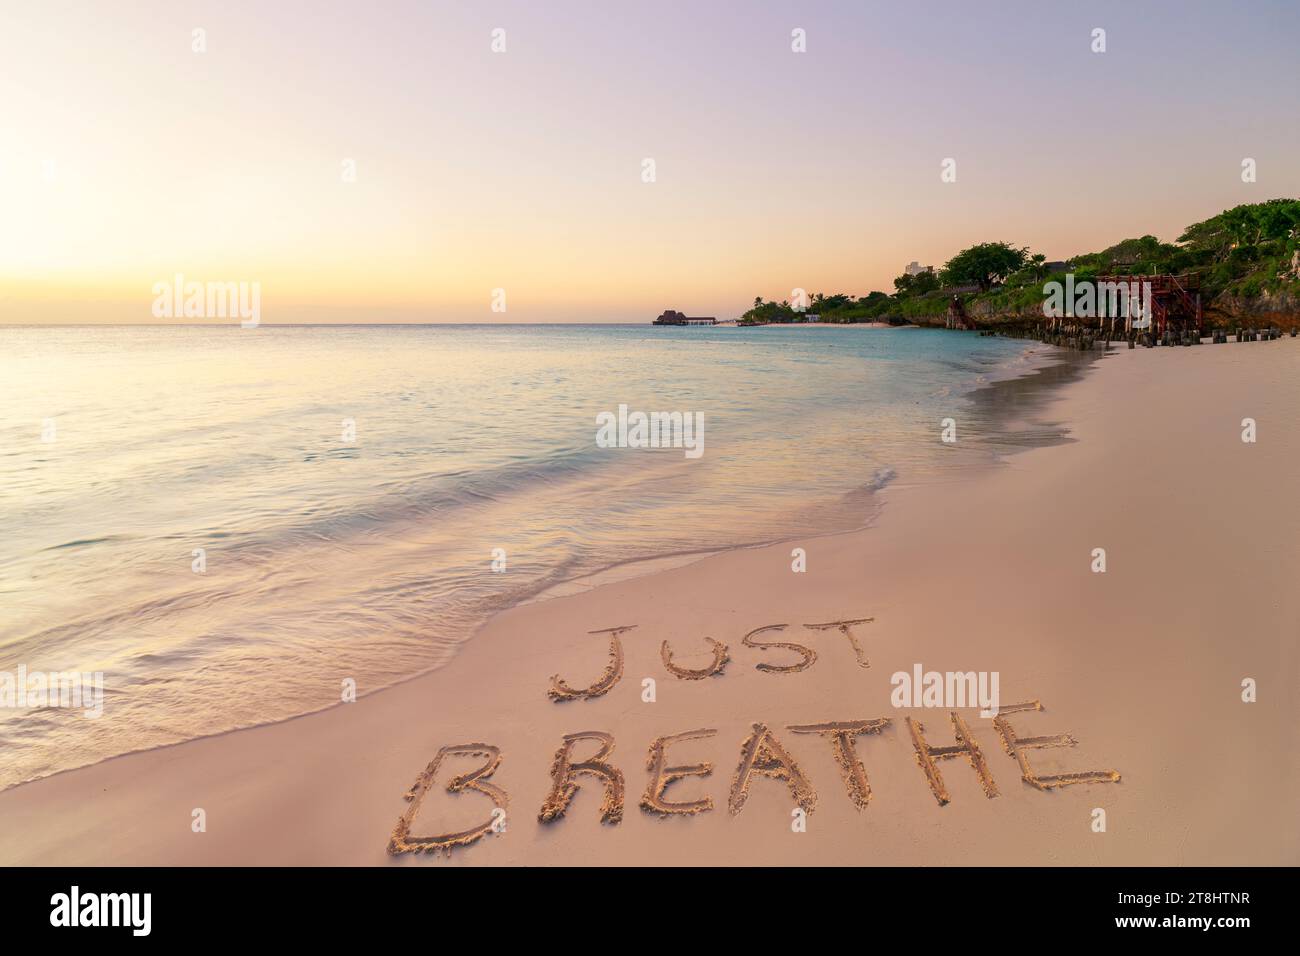 Scritta a mano, respira sulla spiaggia di sabbia al tramonto, relax e concetto estivo, Zanzibar, spiaggia di Kendwa, Tanzania. Foto Stock